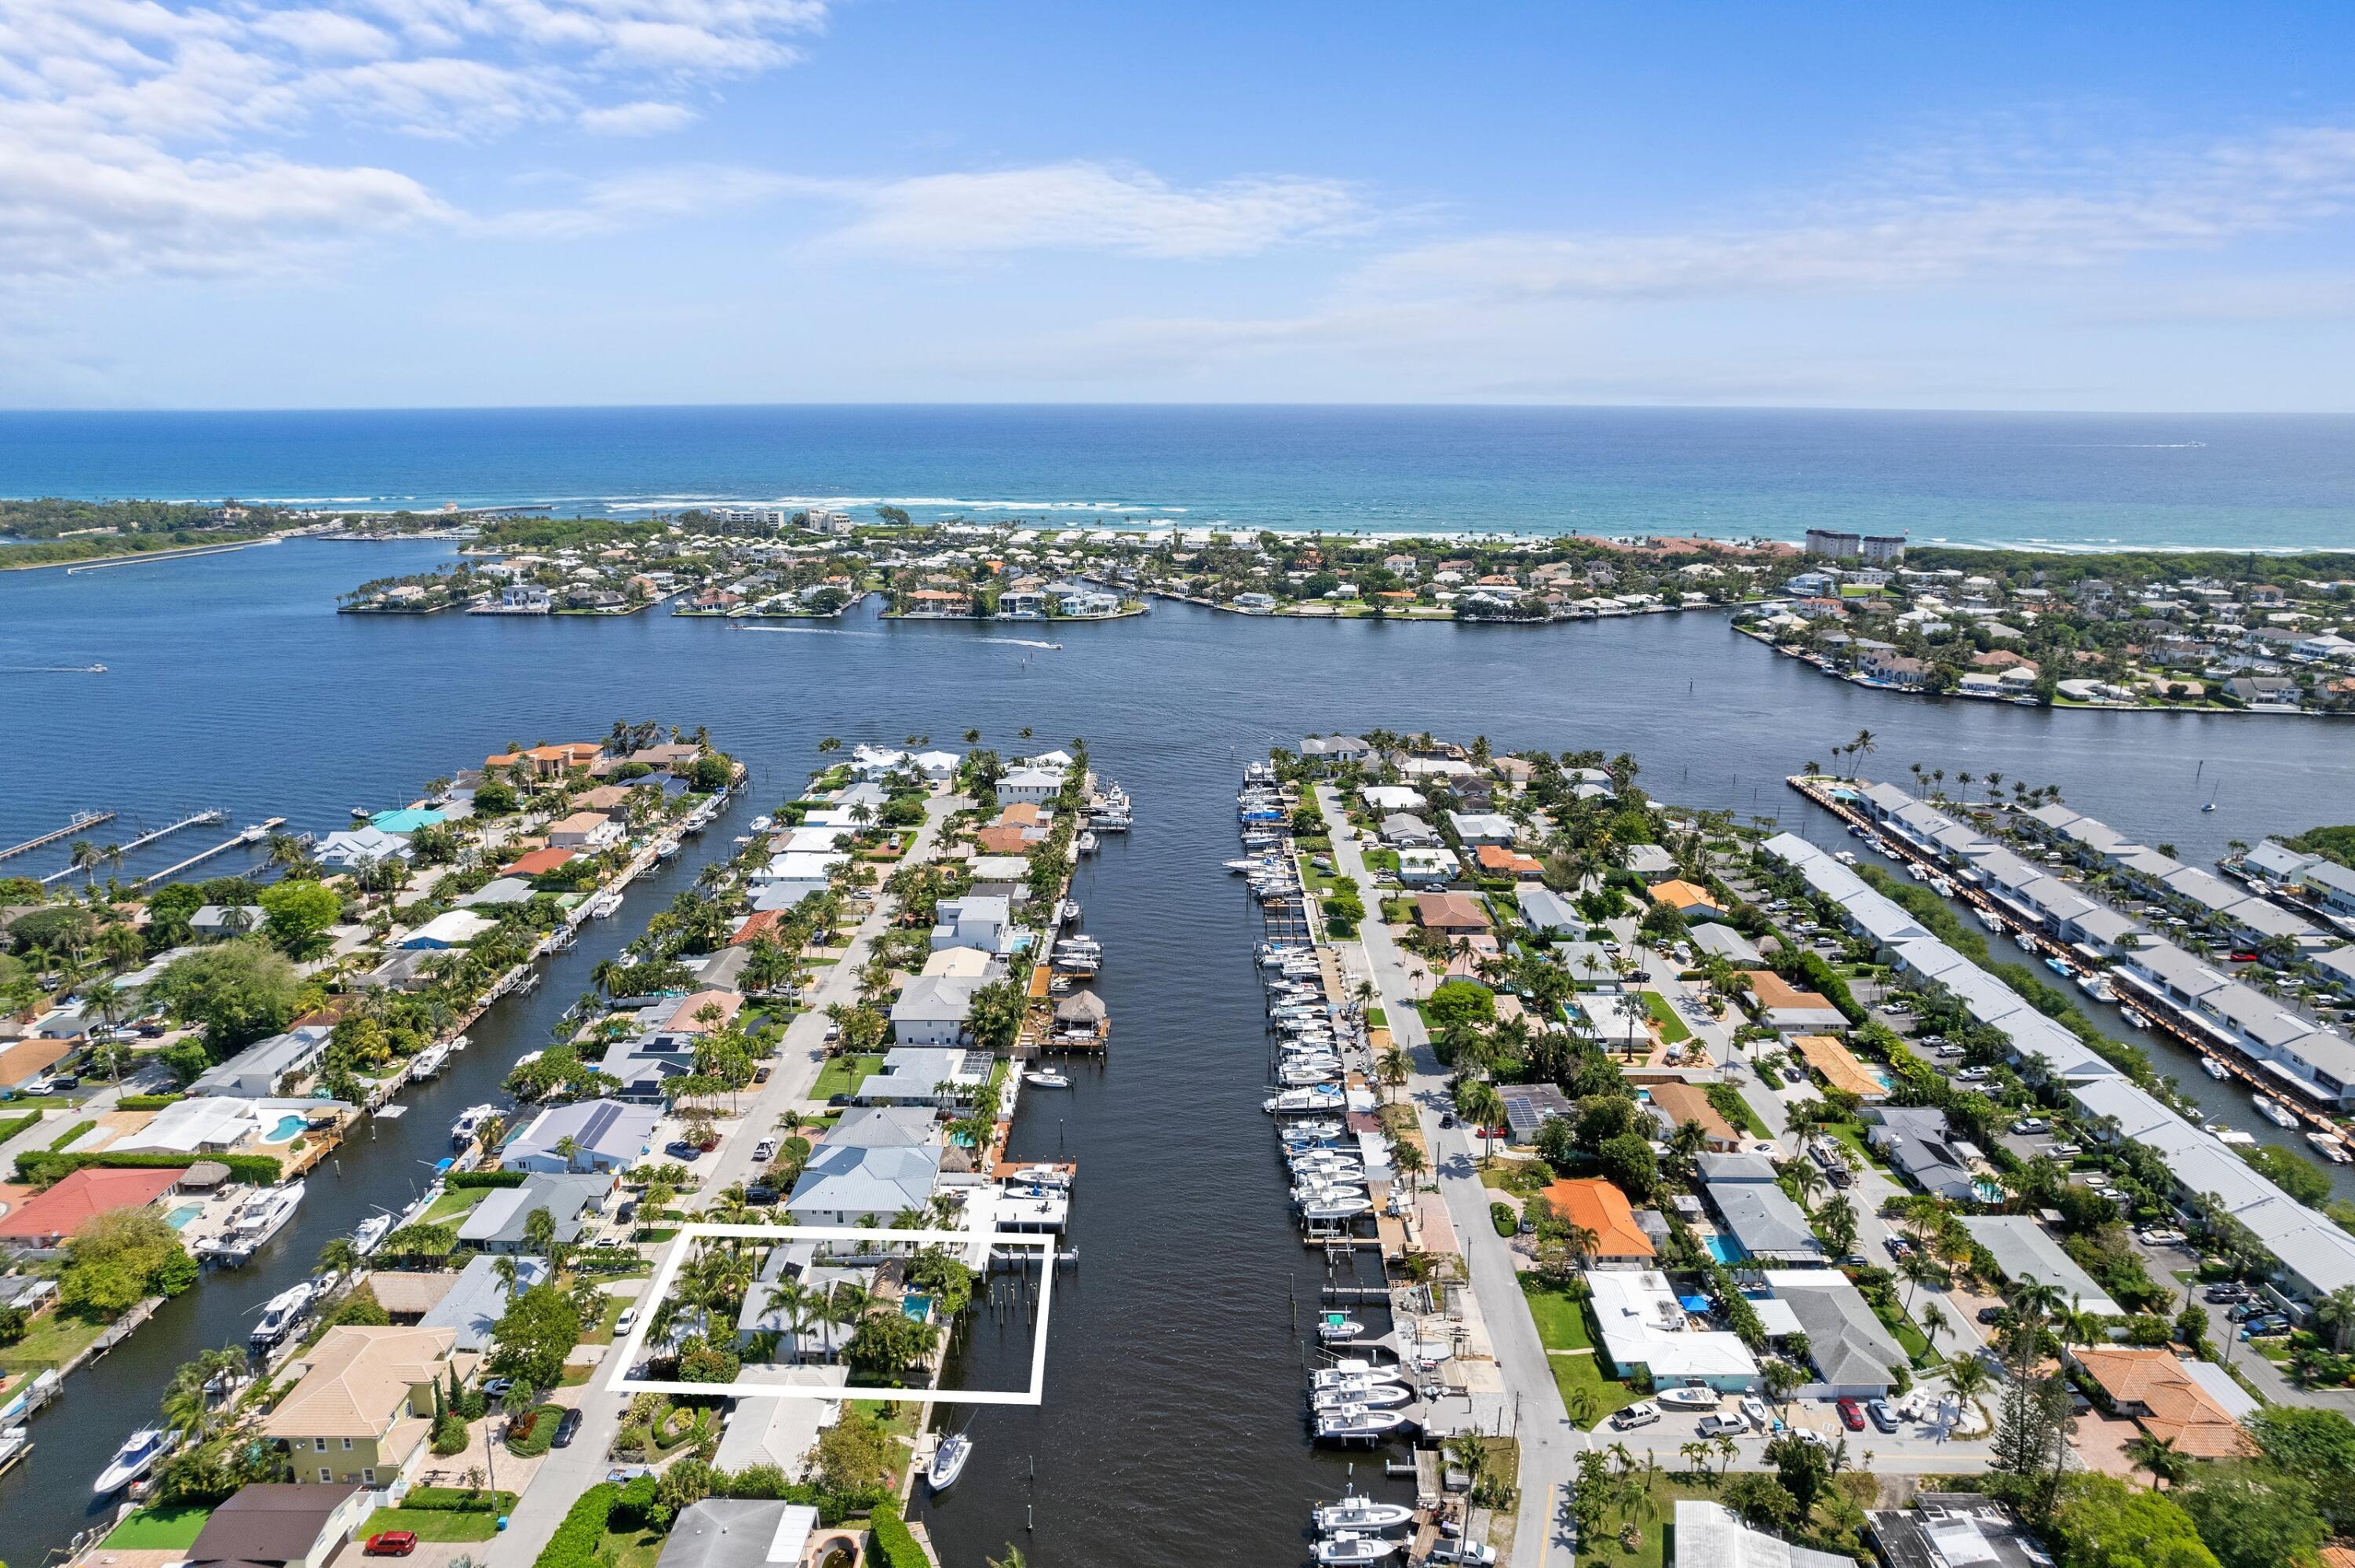 Property for Sale at 650 Shore Drive, Boynton Beach, Palm Beach County, Florida - Bedrooms: 4 
Bathrooms: 3  - $2,700,000